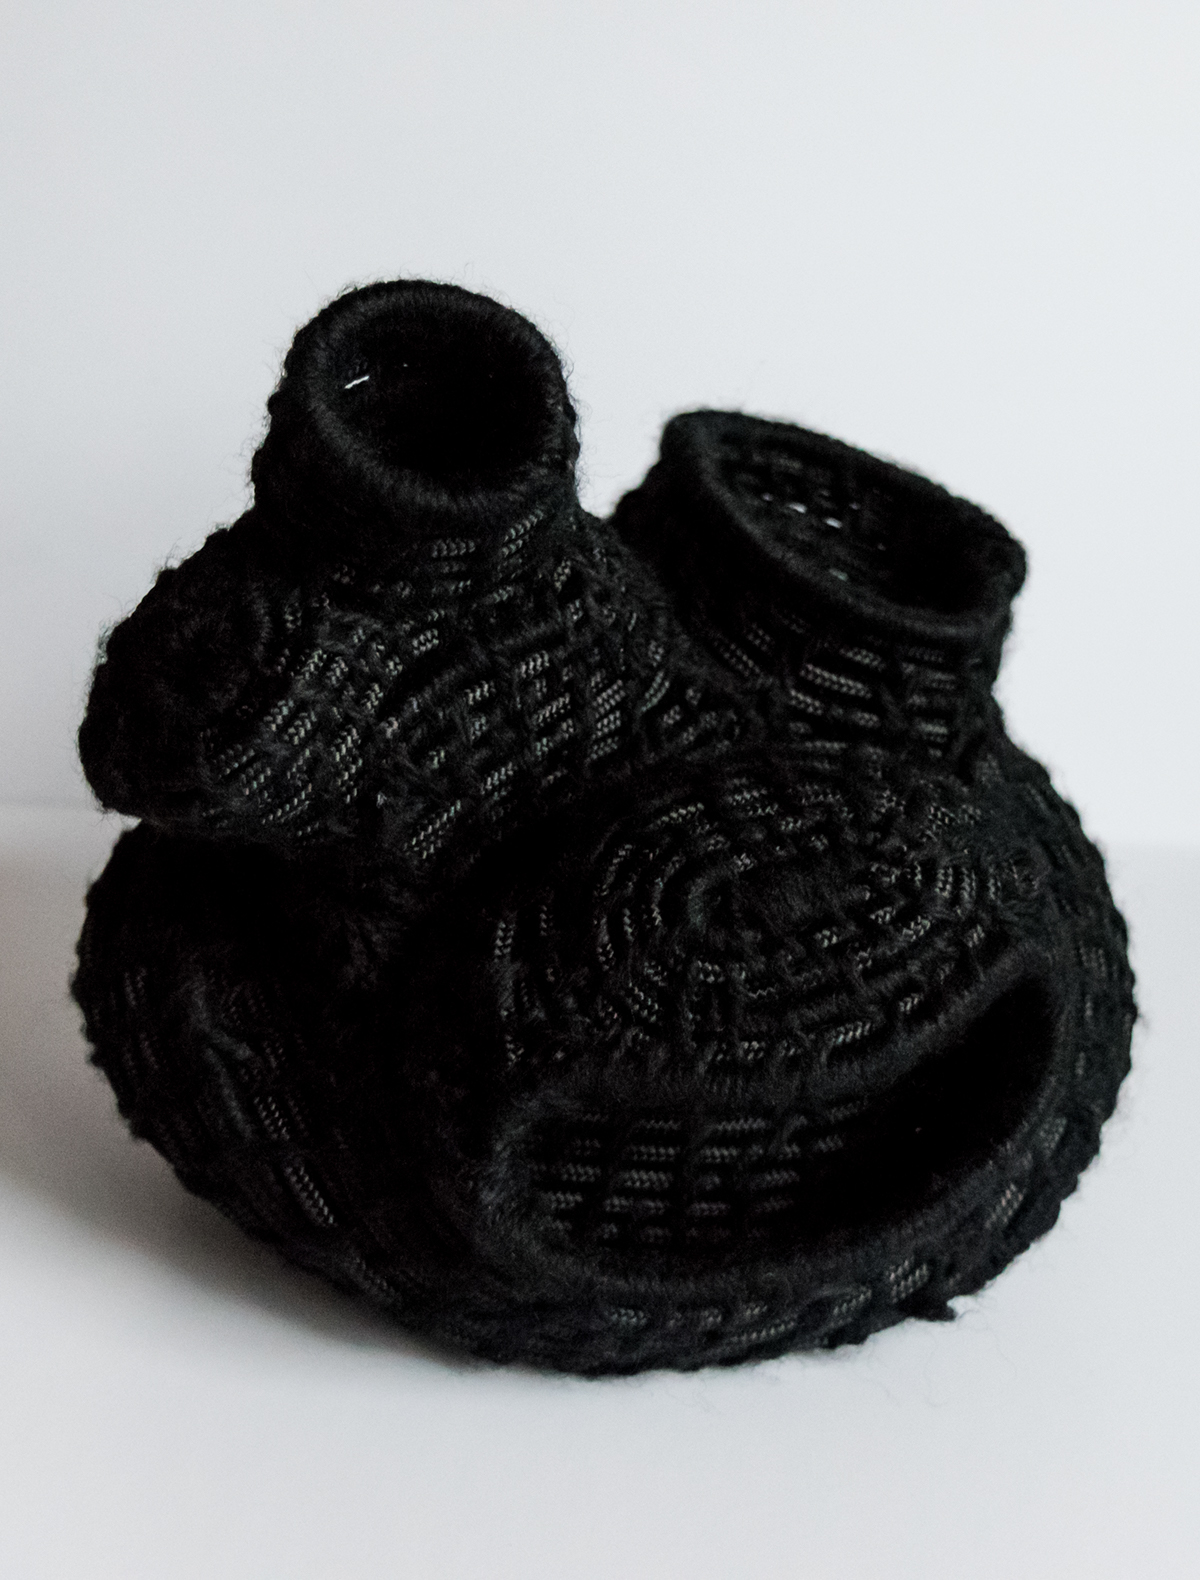 fiber coiling vessels fiber arts sculptural fibers